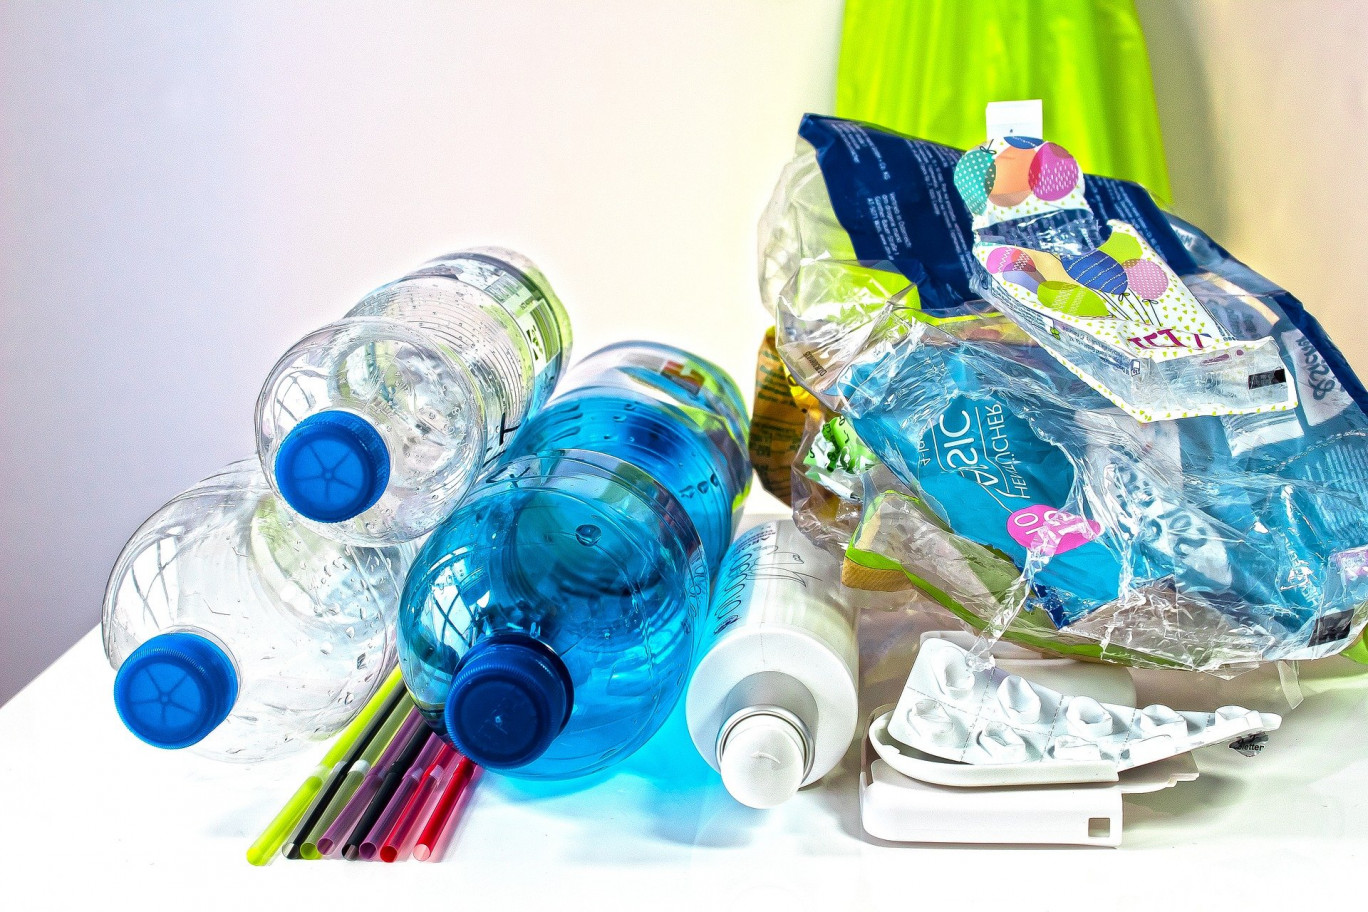 La loi AGEC prévoit de réduire l'utilisation de plastique et d'améliorer les conditions de tri. Crédit photo stux